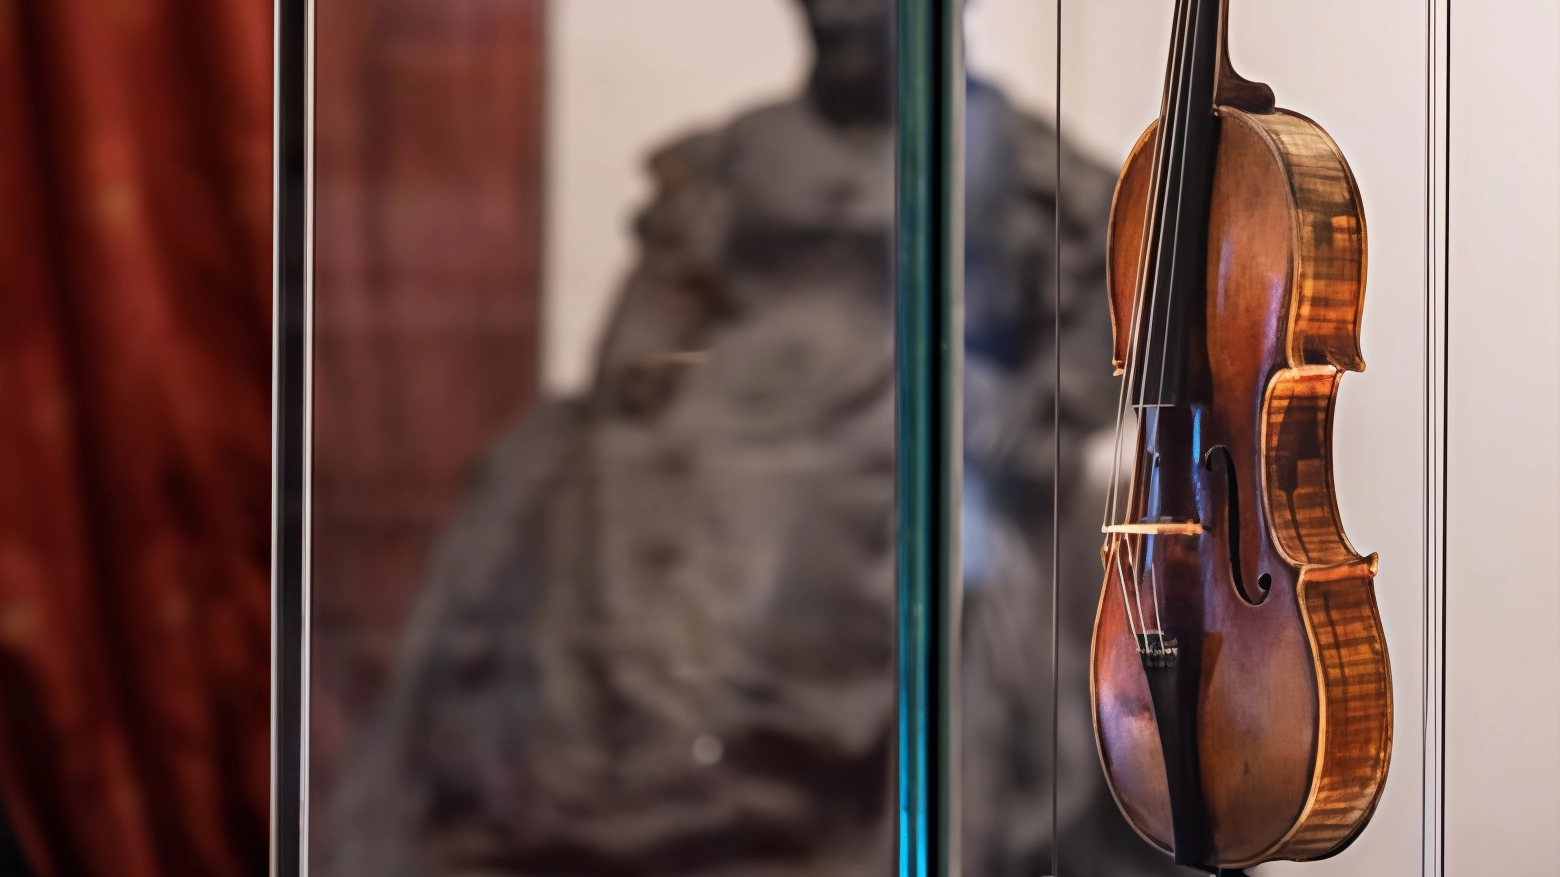 Il “Cannone“ all’esame Sincrotrone: "Il violino di Paganini sta bene"